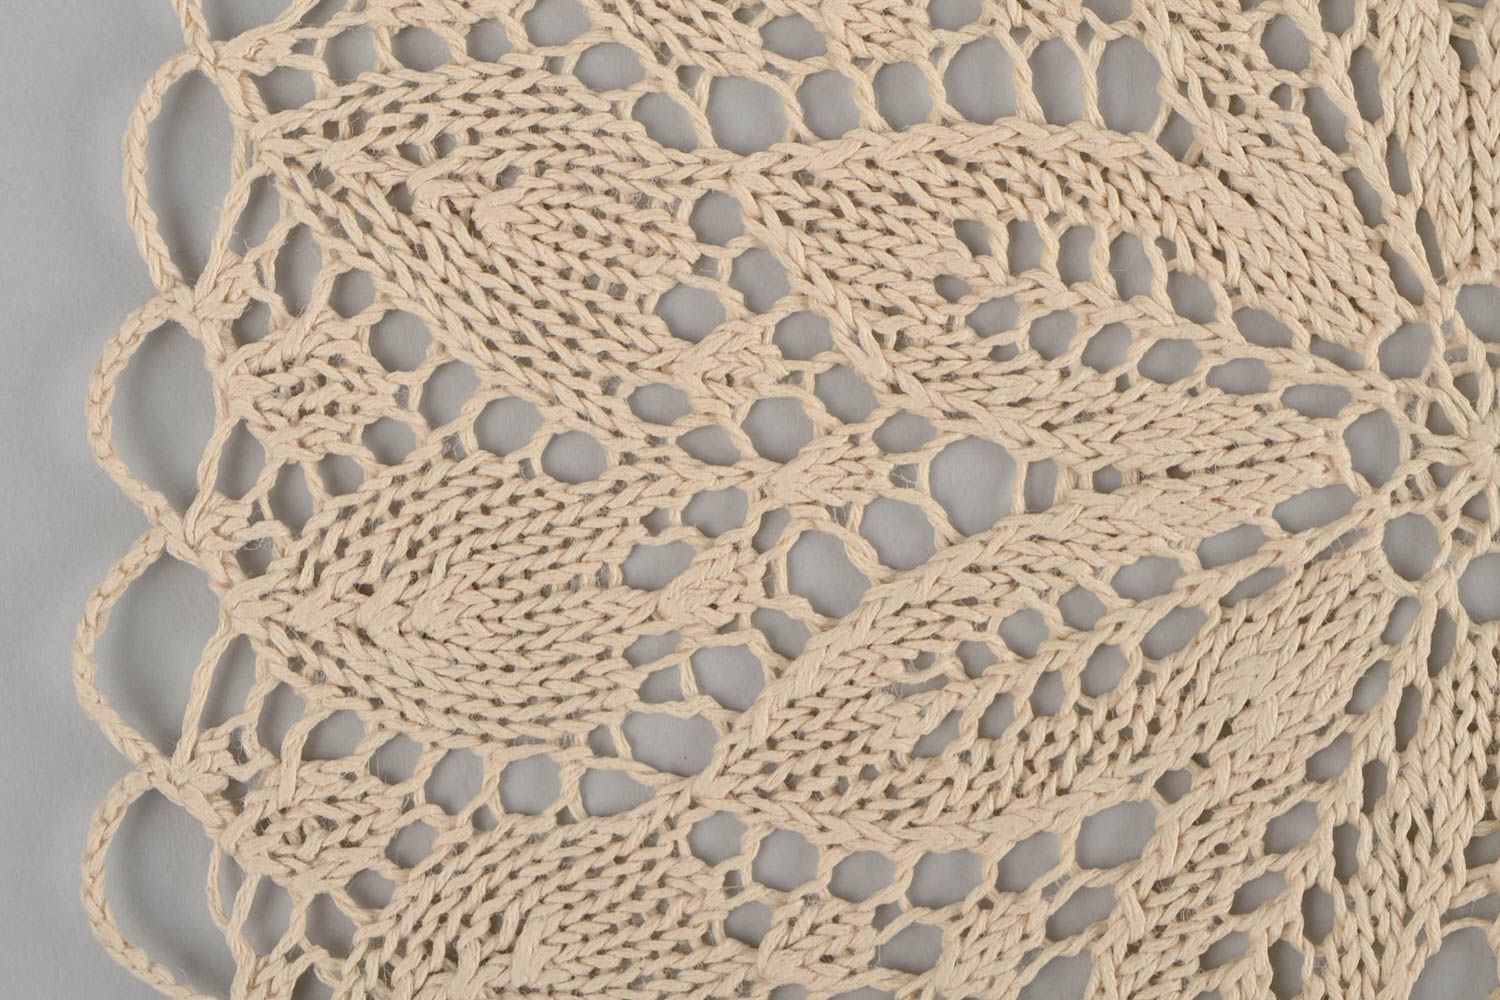 Handmade knitted napkin cotton designer interior kitchen decoration idea photo 4